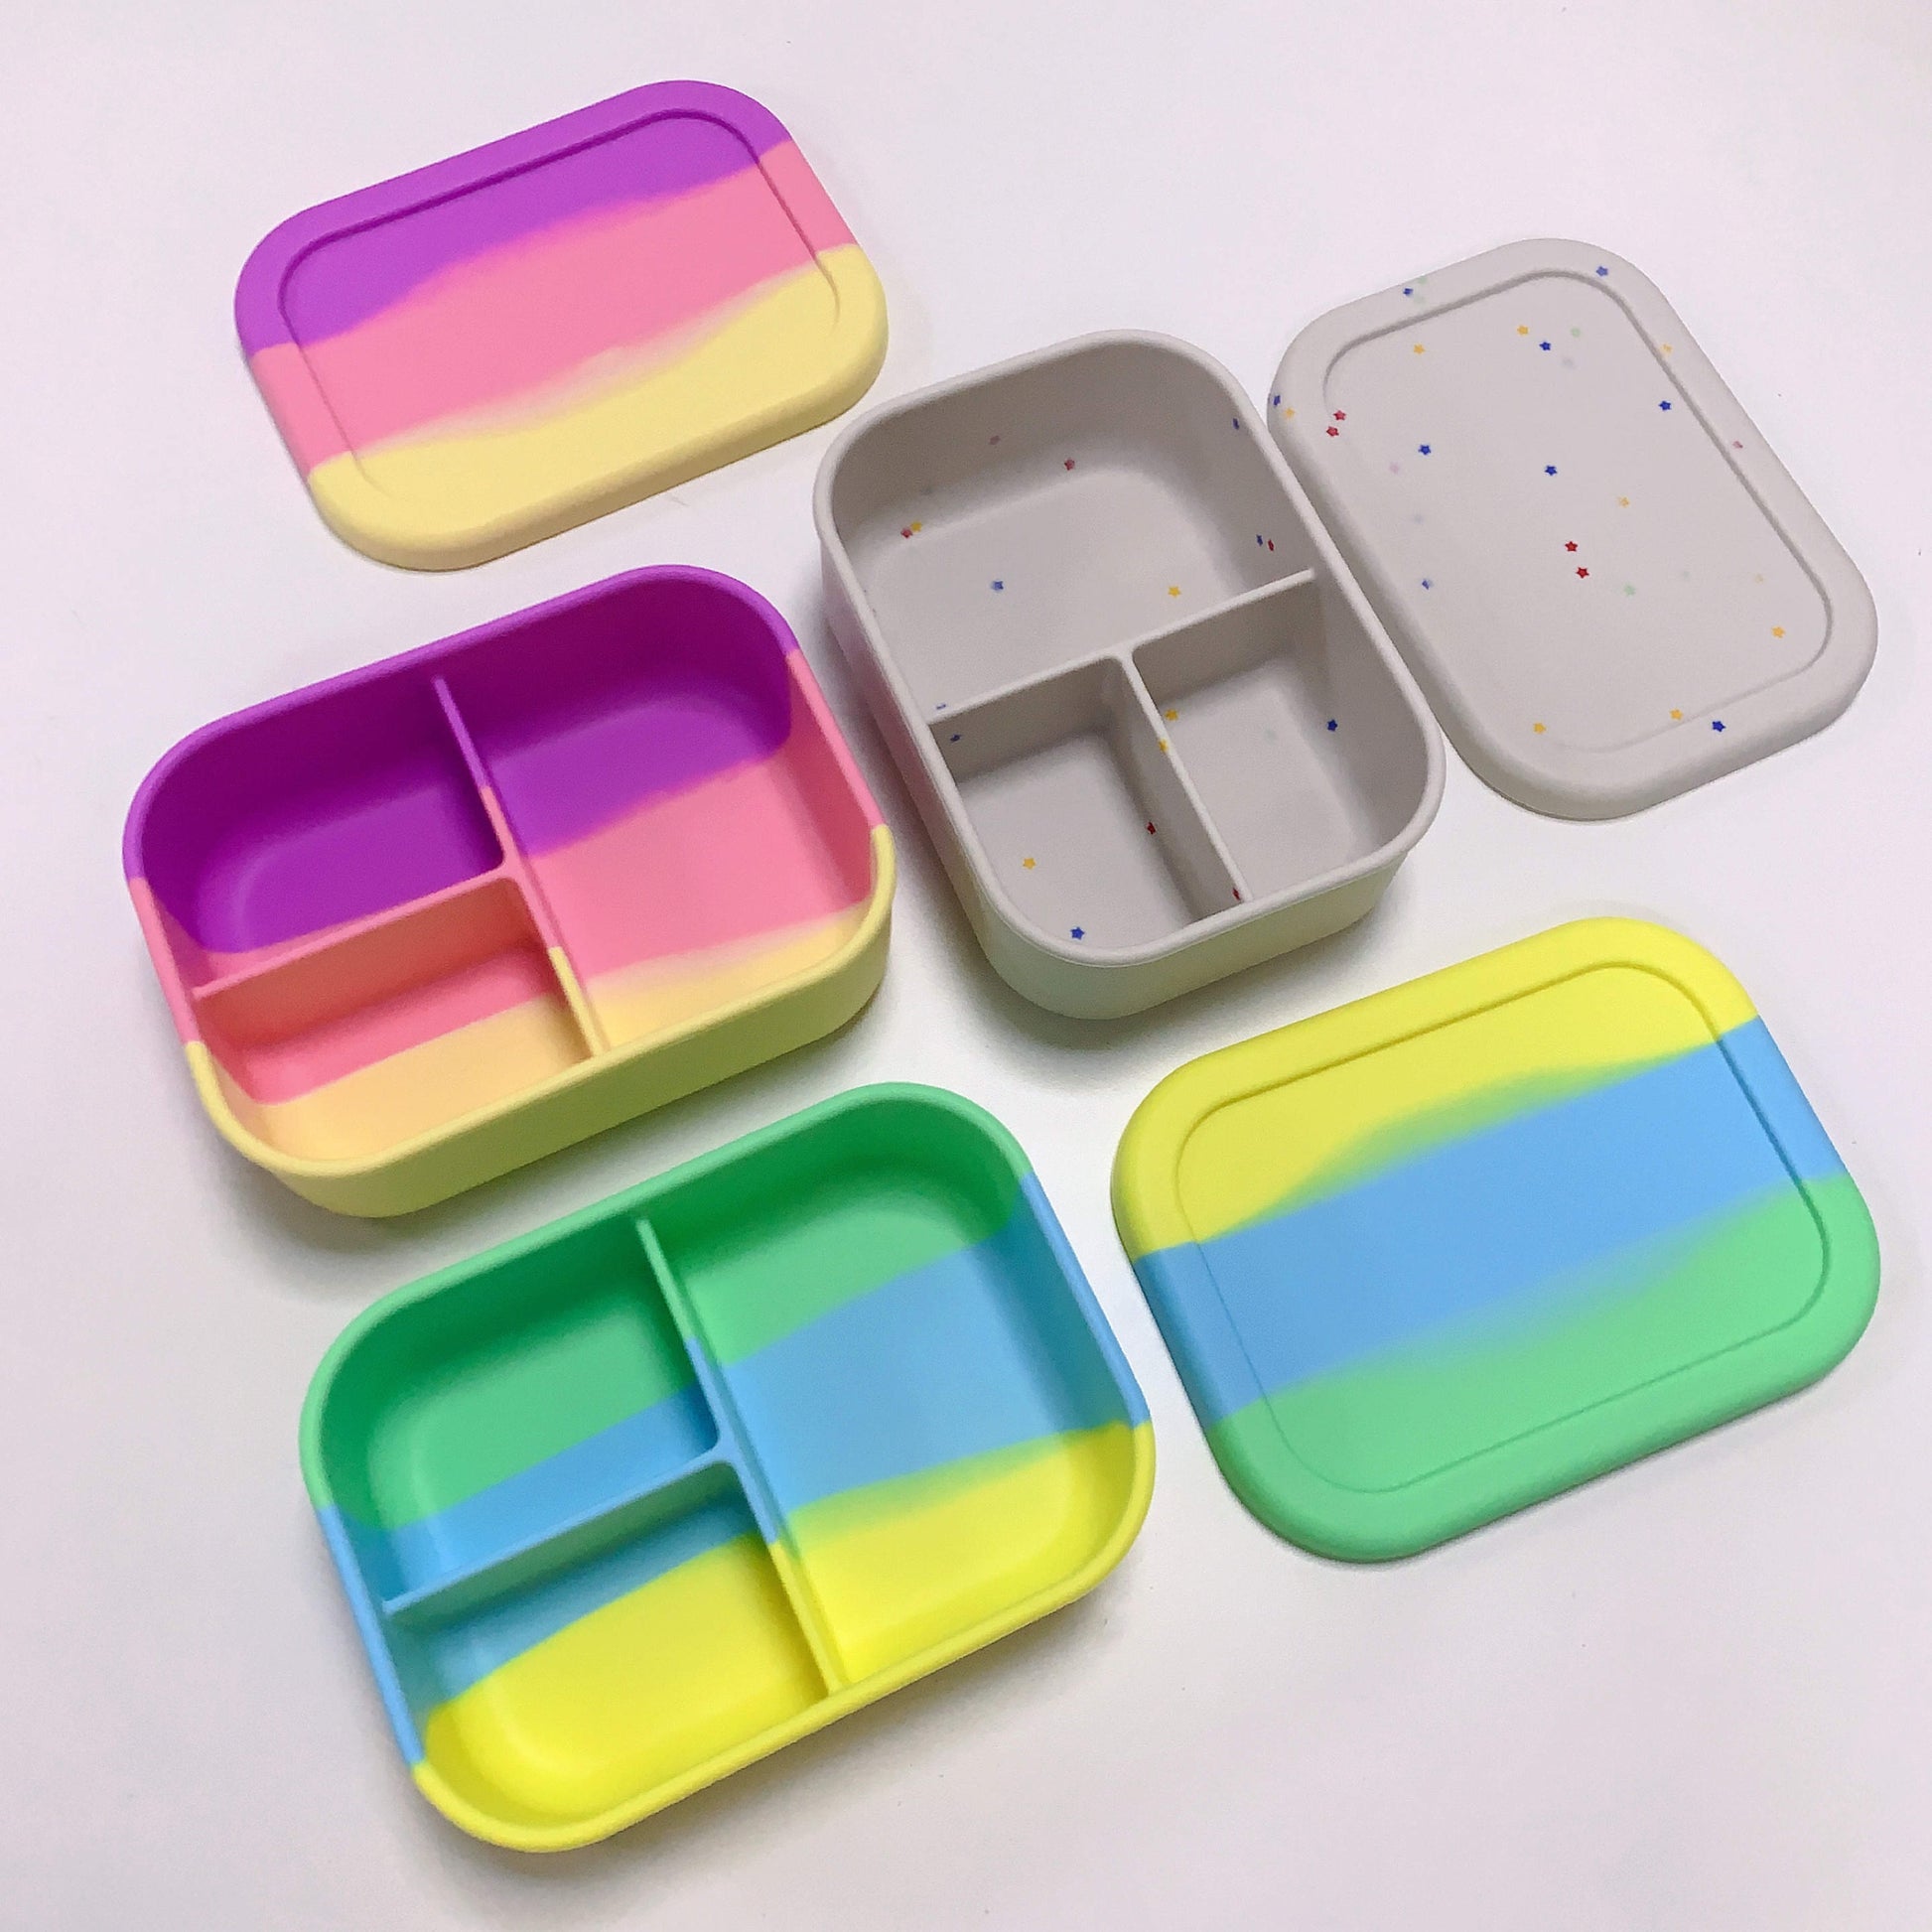 2 Compartments Silicone Bento Box